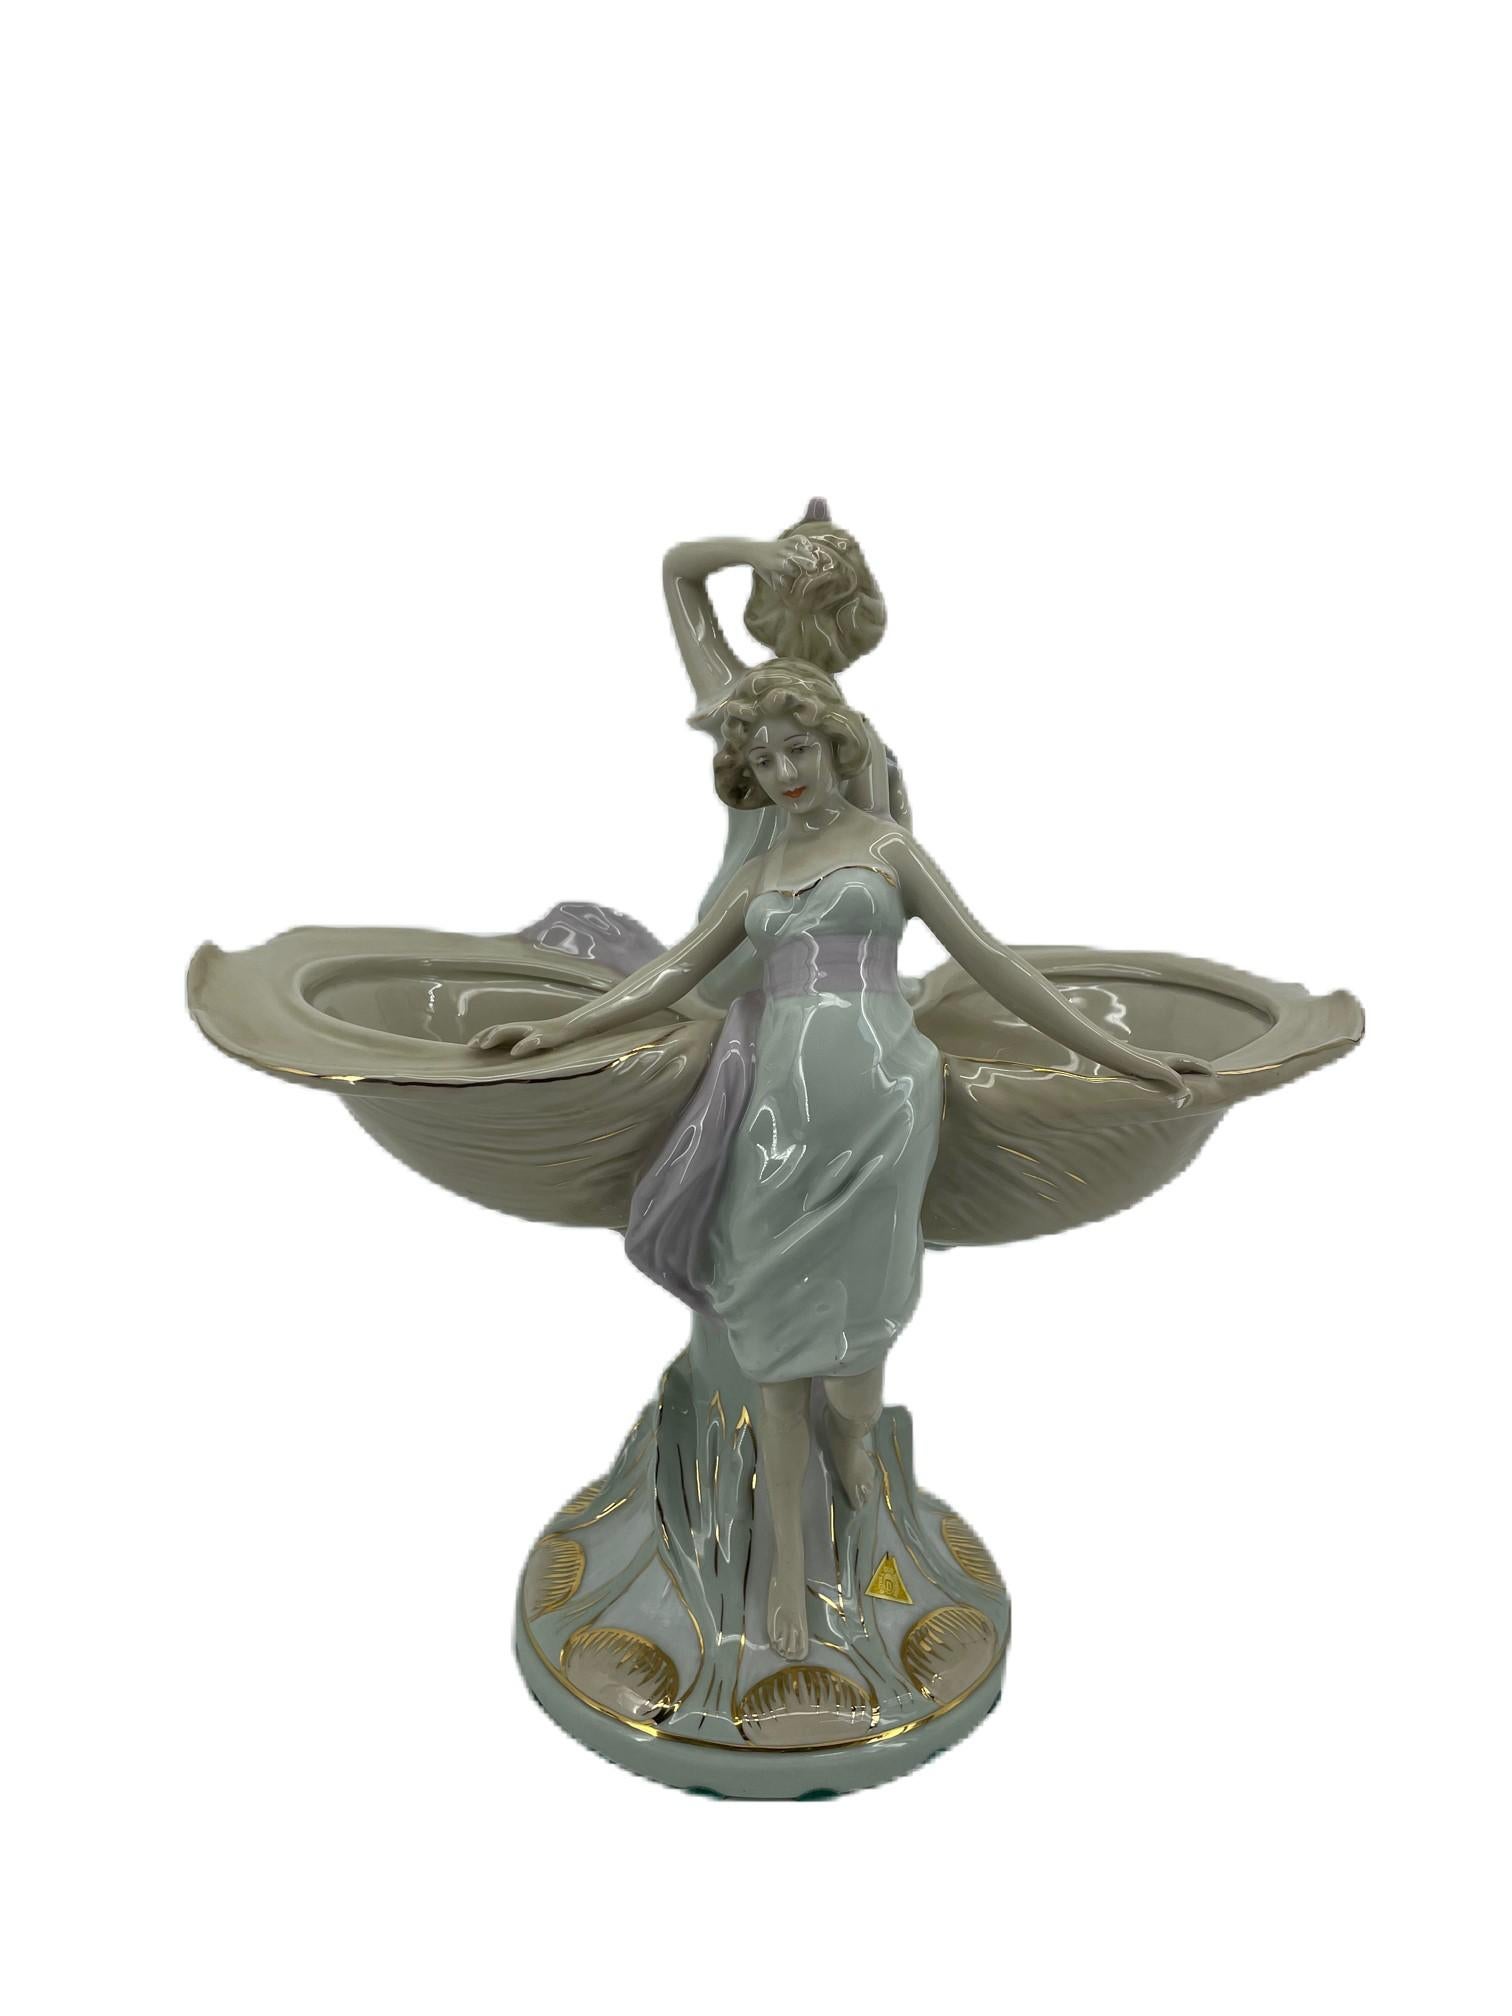 Figurine Royal Dux
Impressionnante figurine en porcelaine peinte à la main, représentant deux plats en forme de coquille surmontés de deux jeunes filles, reposant sur une base rustique étalée, dans des couleurs pastel brillantes à dominante crème,